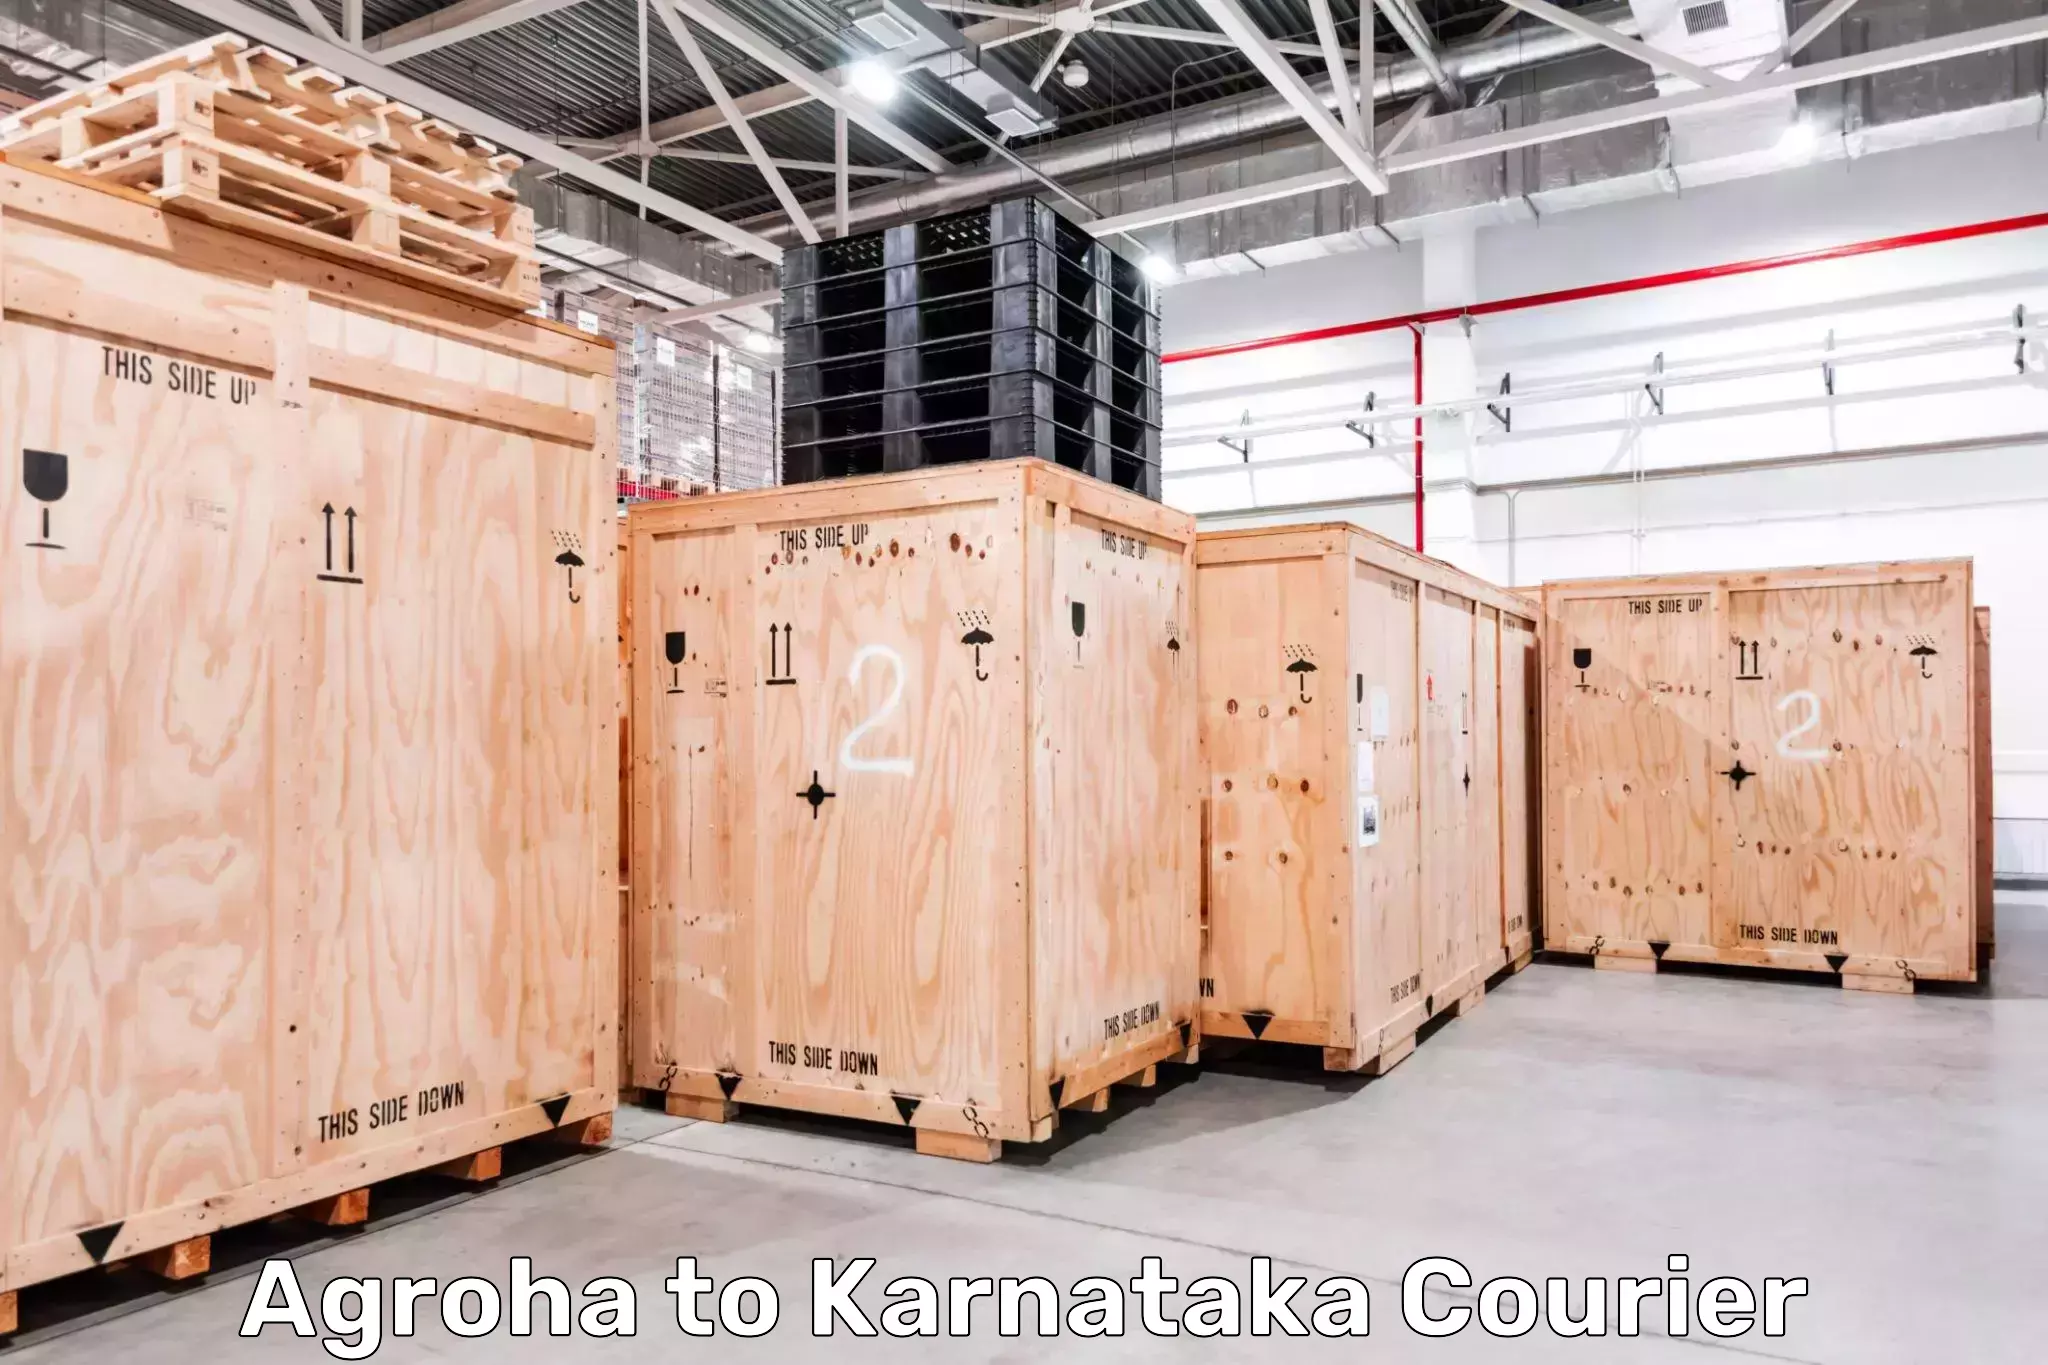 Tracking updates Agroha to Karnataka